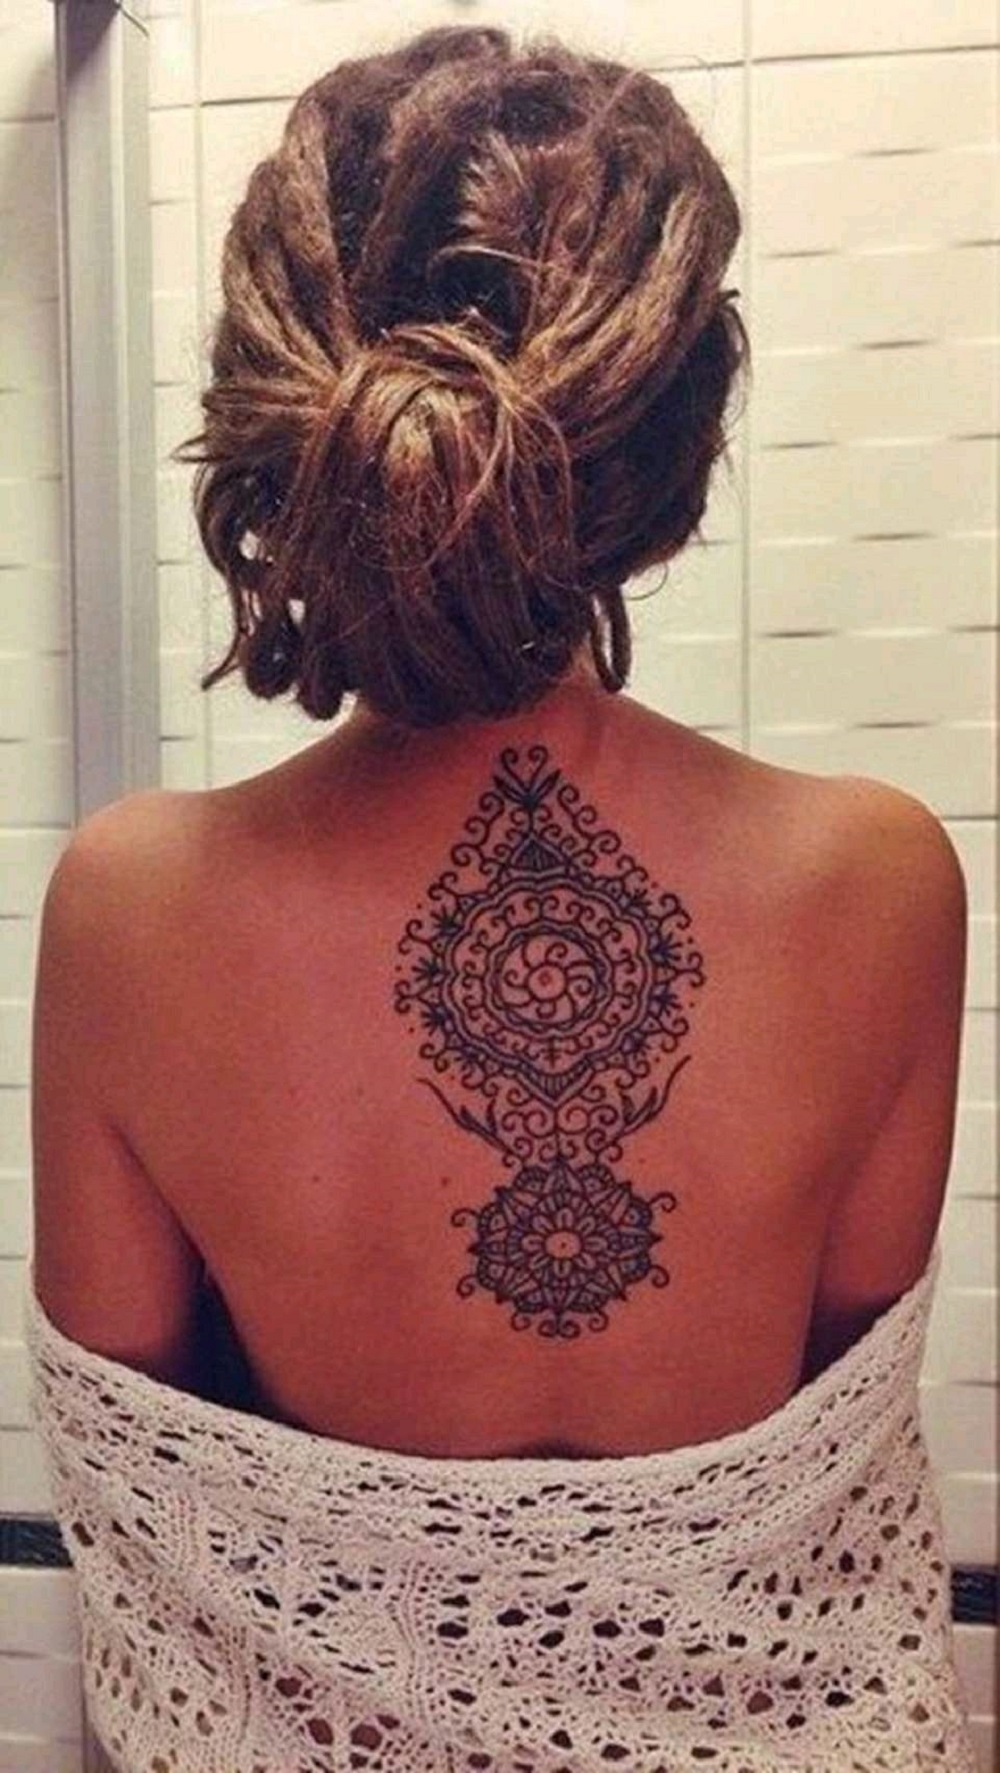 Tatuaje en la espalda - Hermosa Mandala.